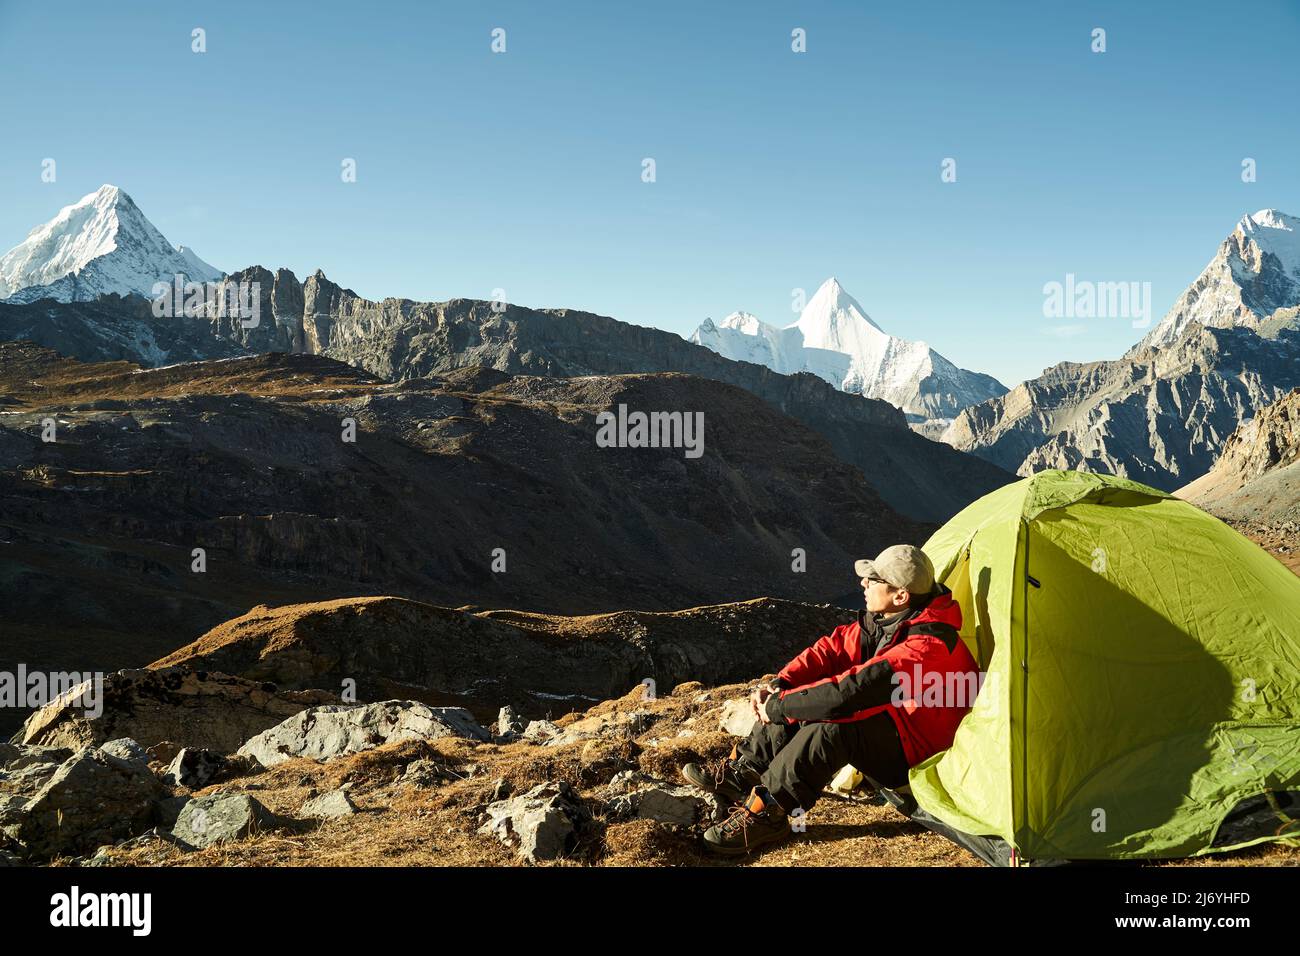 asiatischer Mann, männlicher Camper, der im Zelt sitzt und die Morgensonne im yading Nationalpark, Bezirk daocheng, Provinz sichuan, china genießt Stockfoto